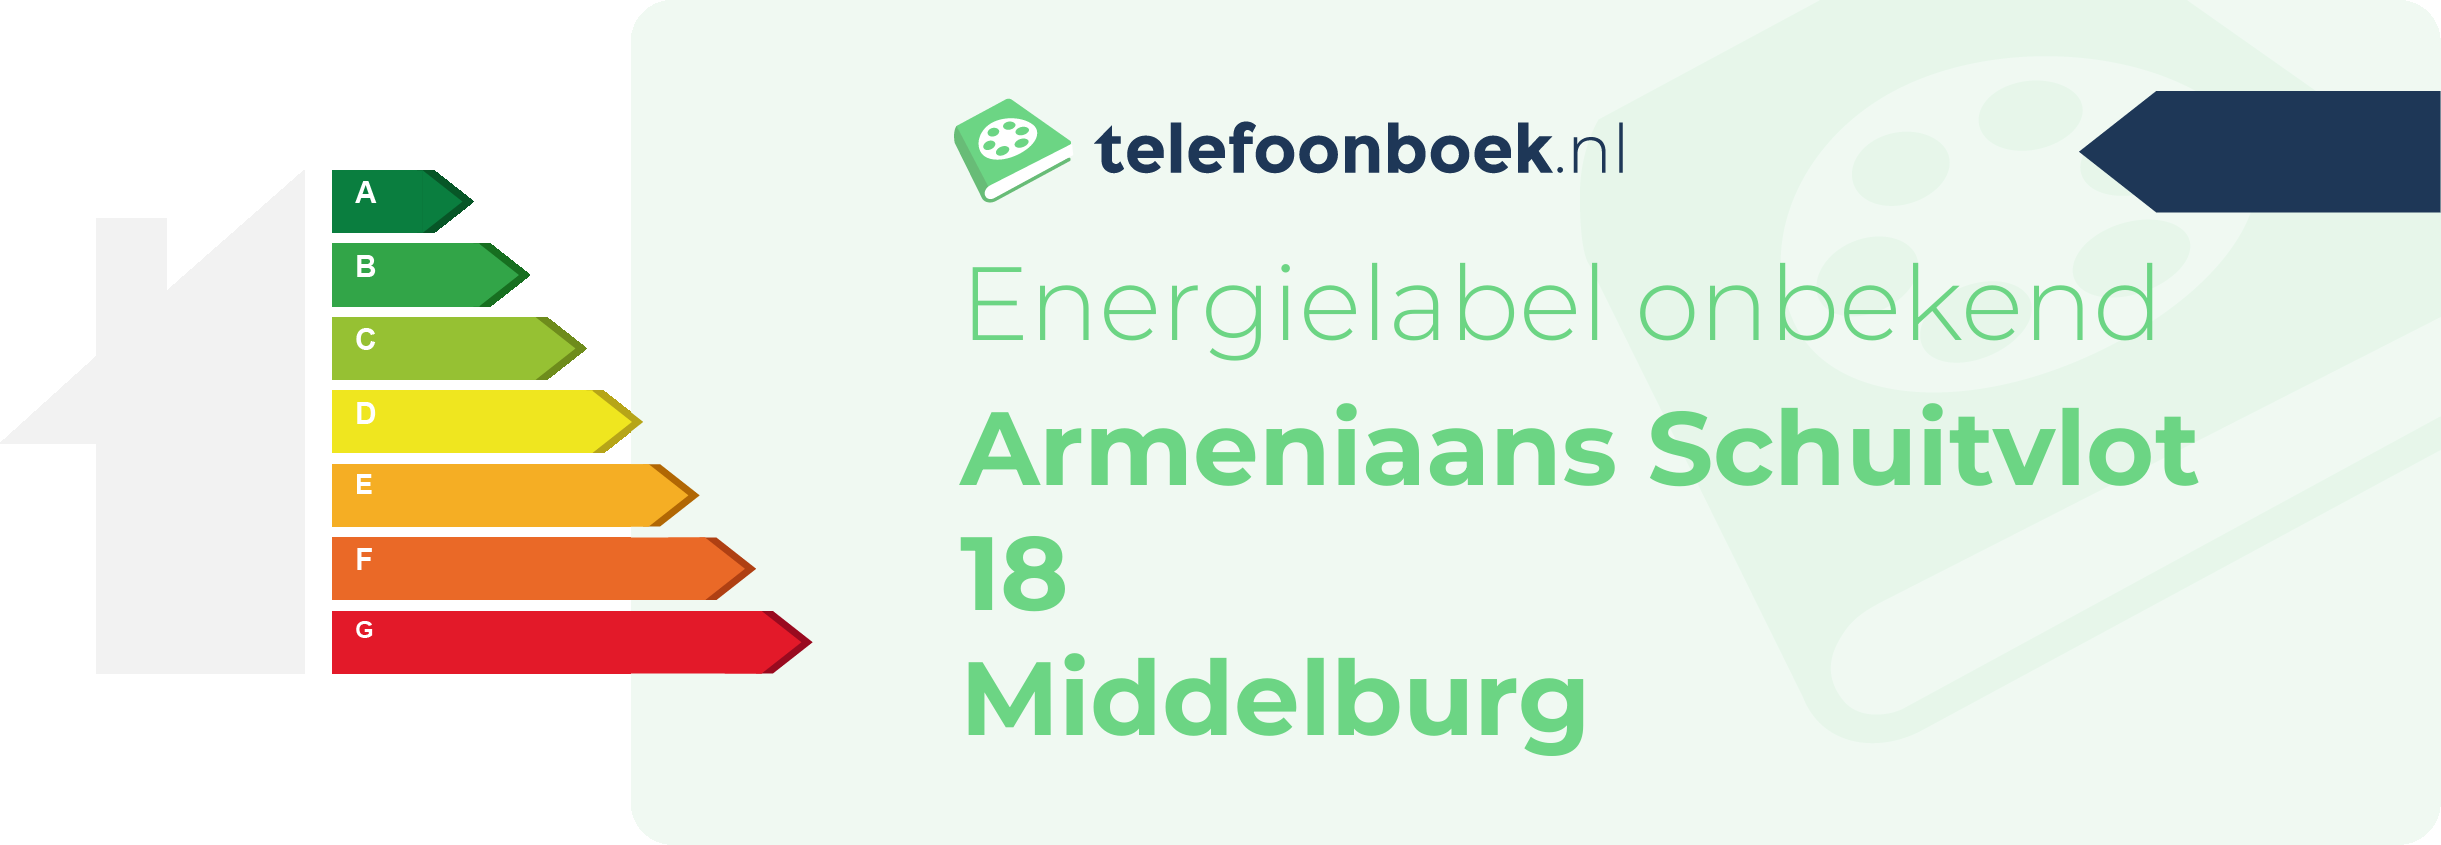 Energielabel Armeniaans Schuitvlot 18 Middelburg